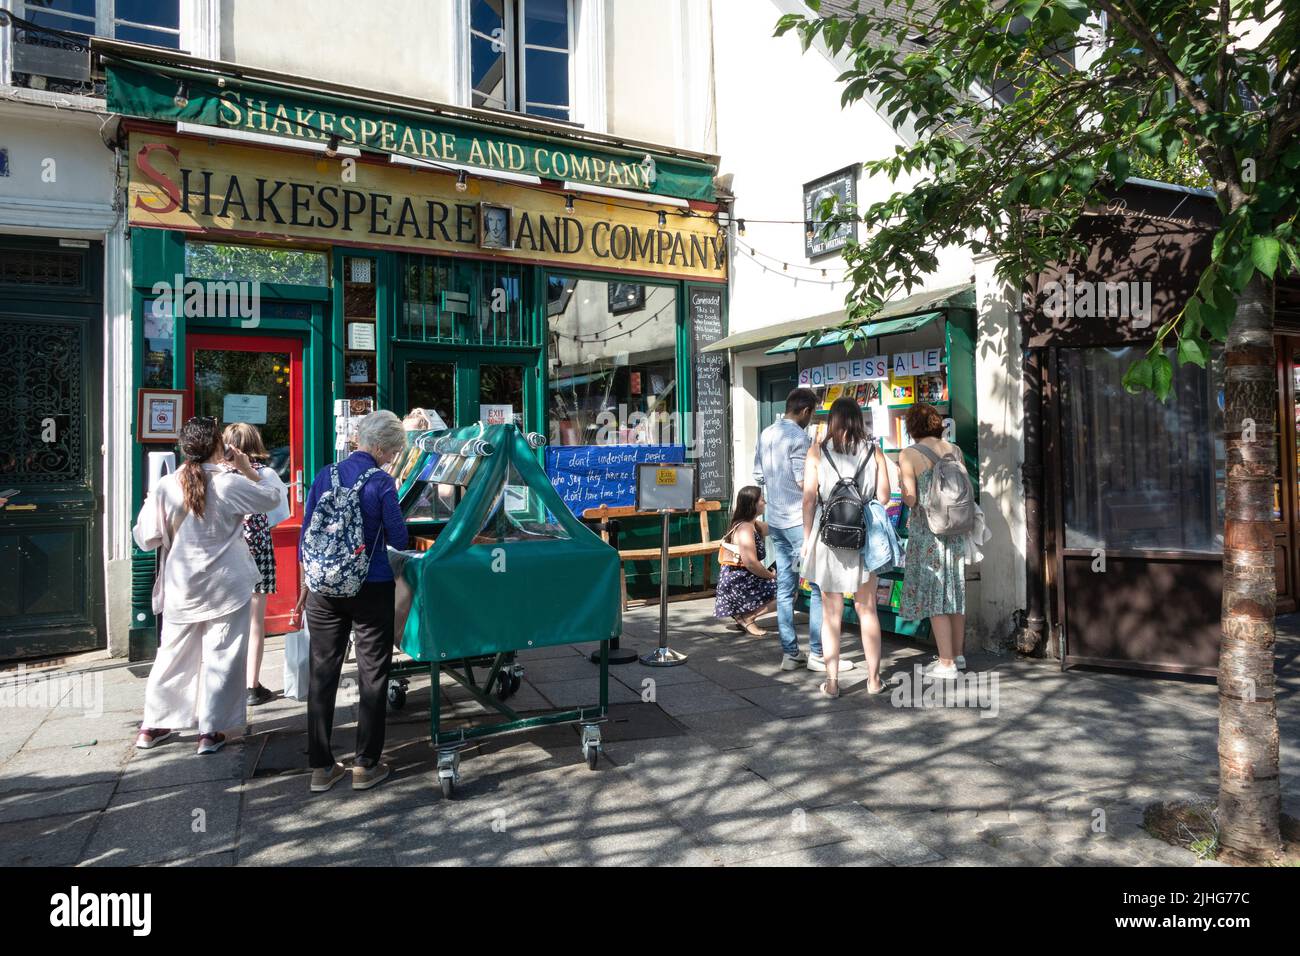 Shakespeare and Company un'iconica libreria in lingua inglese sulla riva sinistra di Parigi, Francia Foto Stock